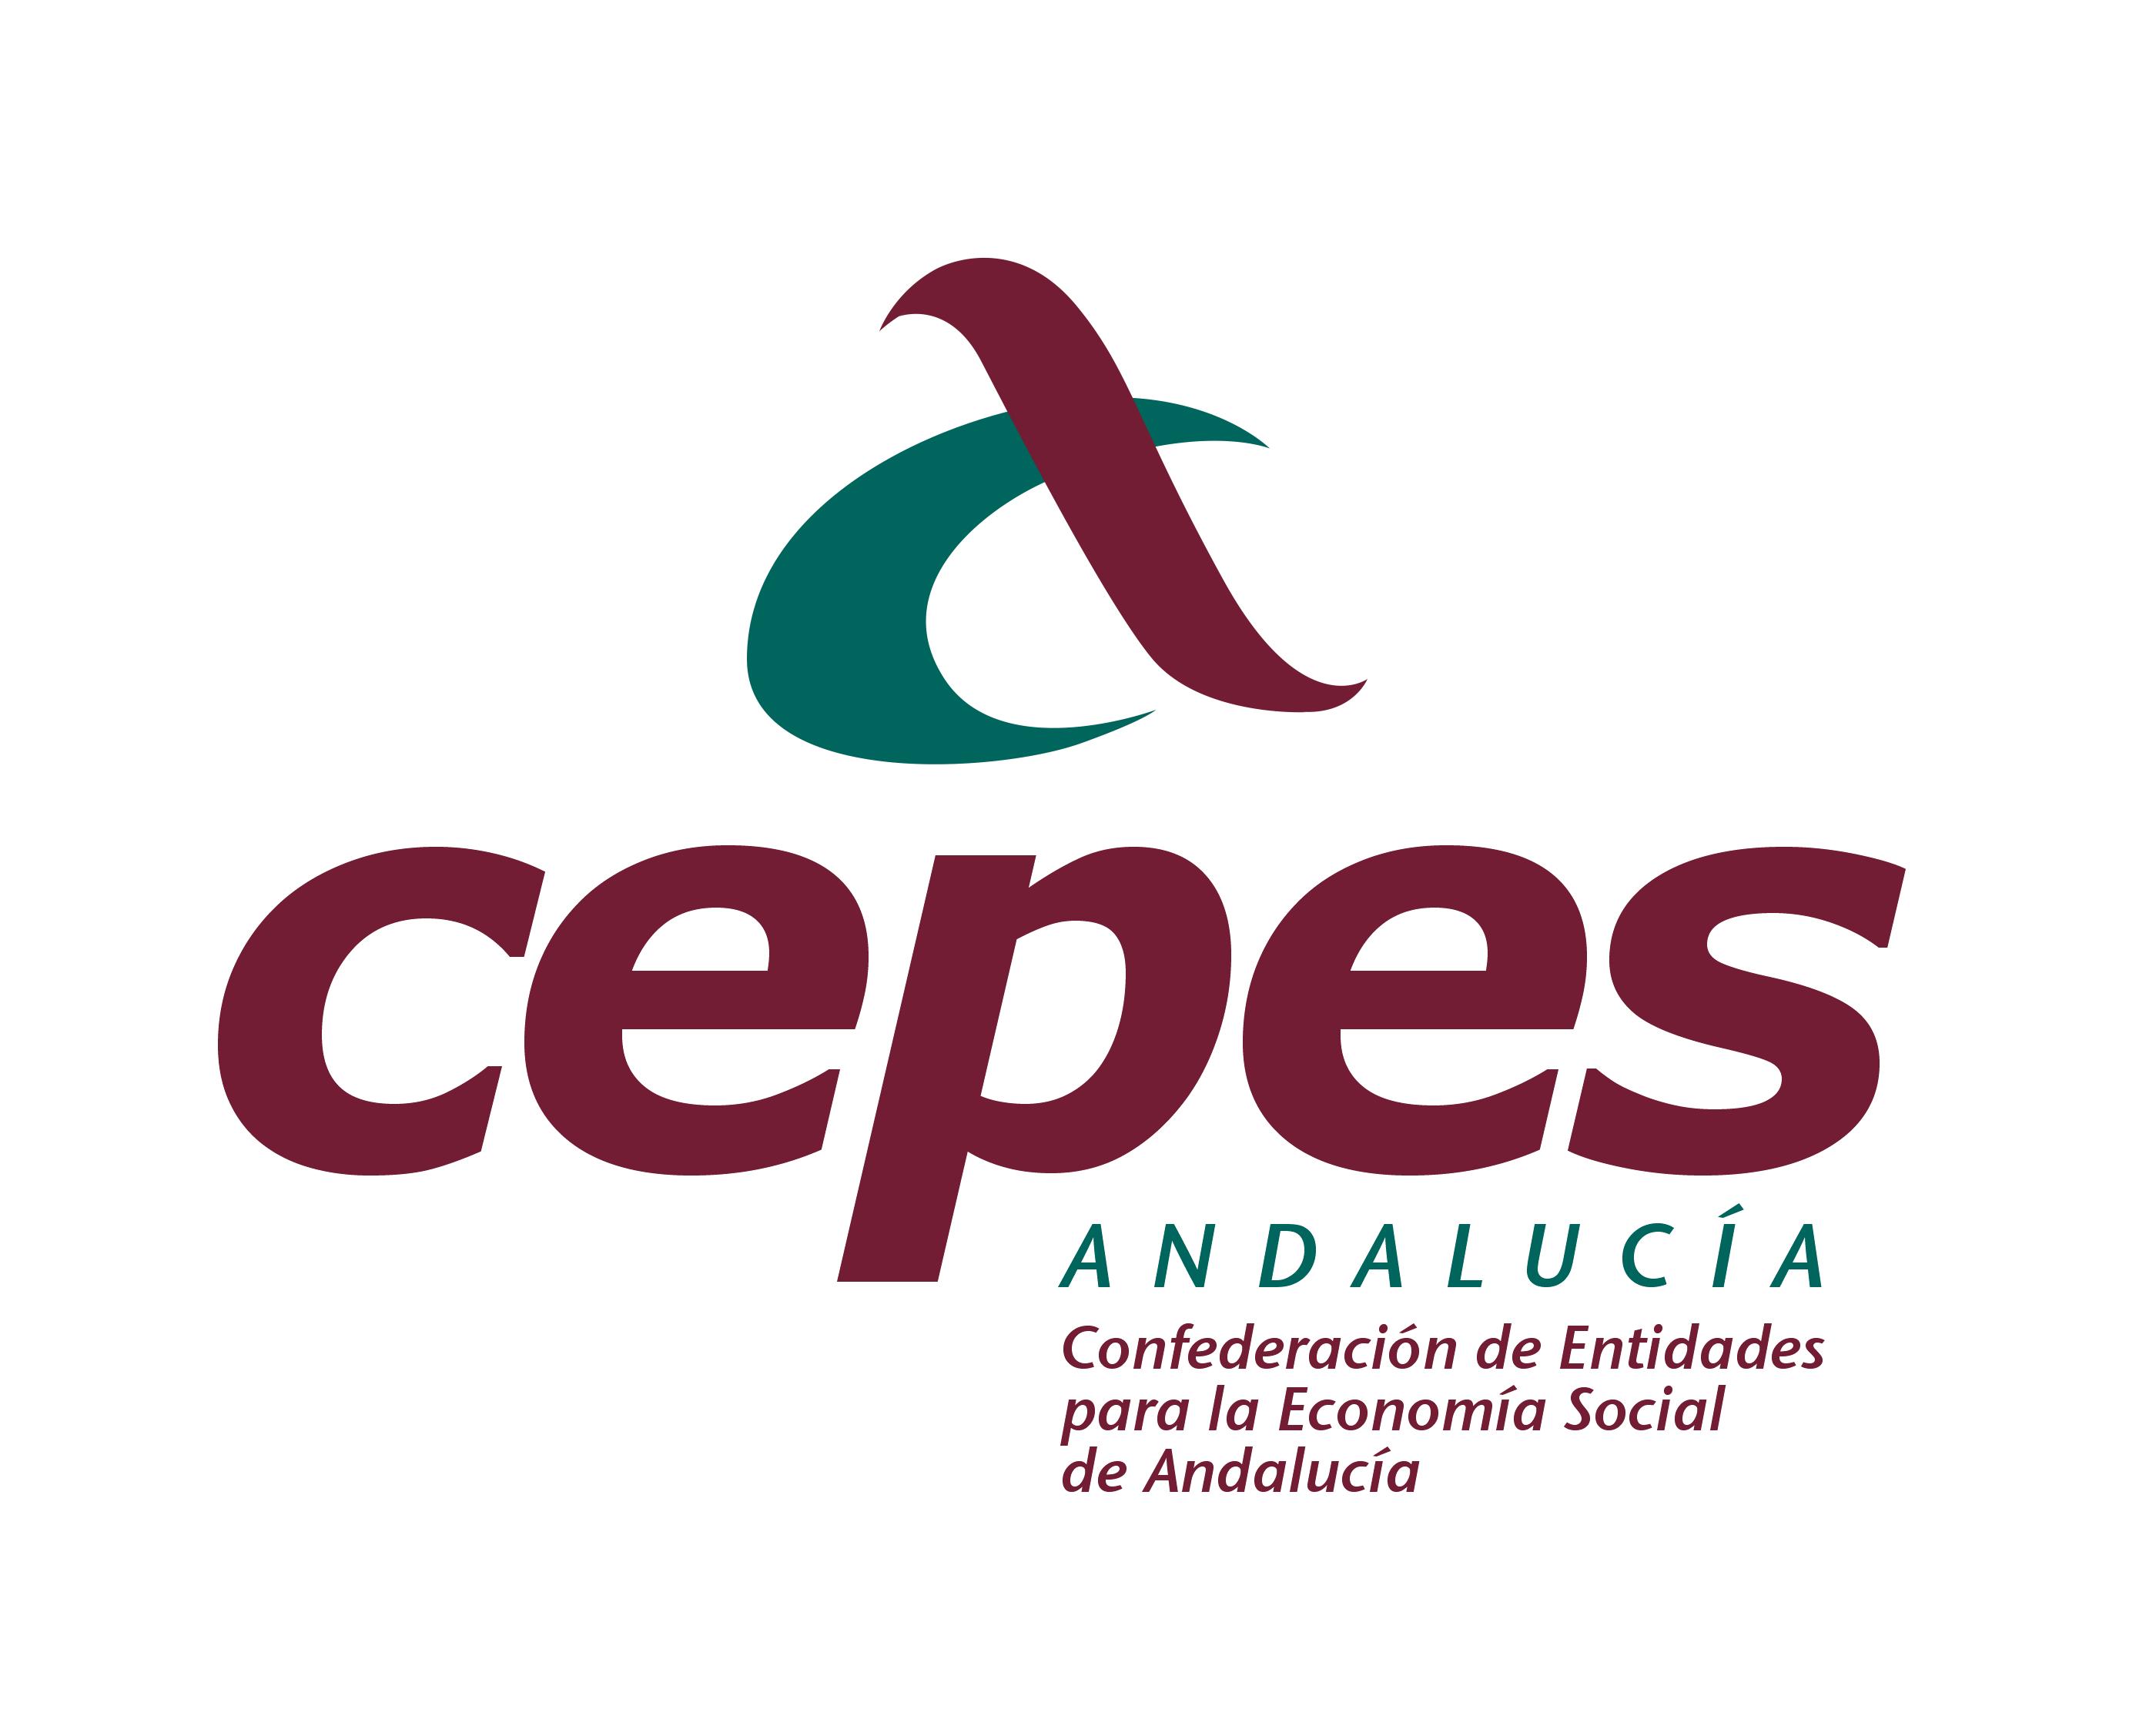 CEPES Andalucía convoca la XXVI Edición de los Premios Arco Iris al Cooperativismo